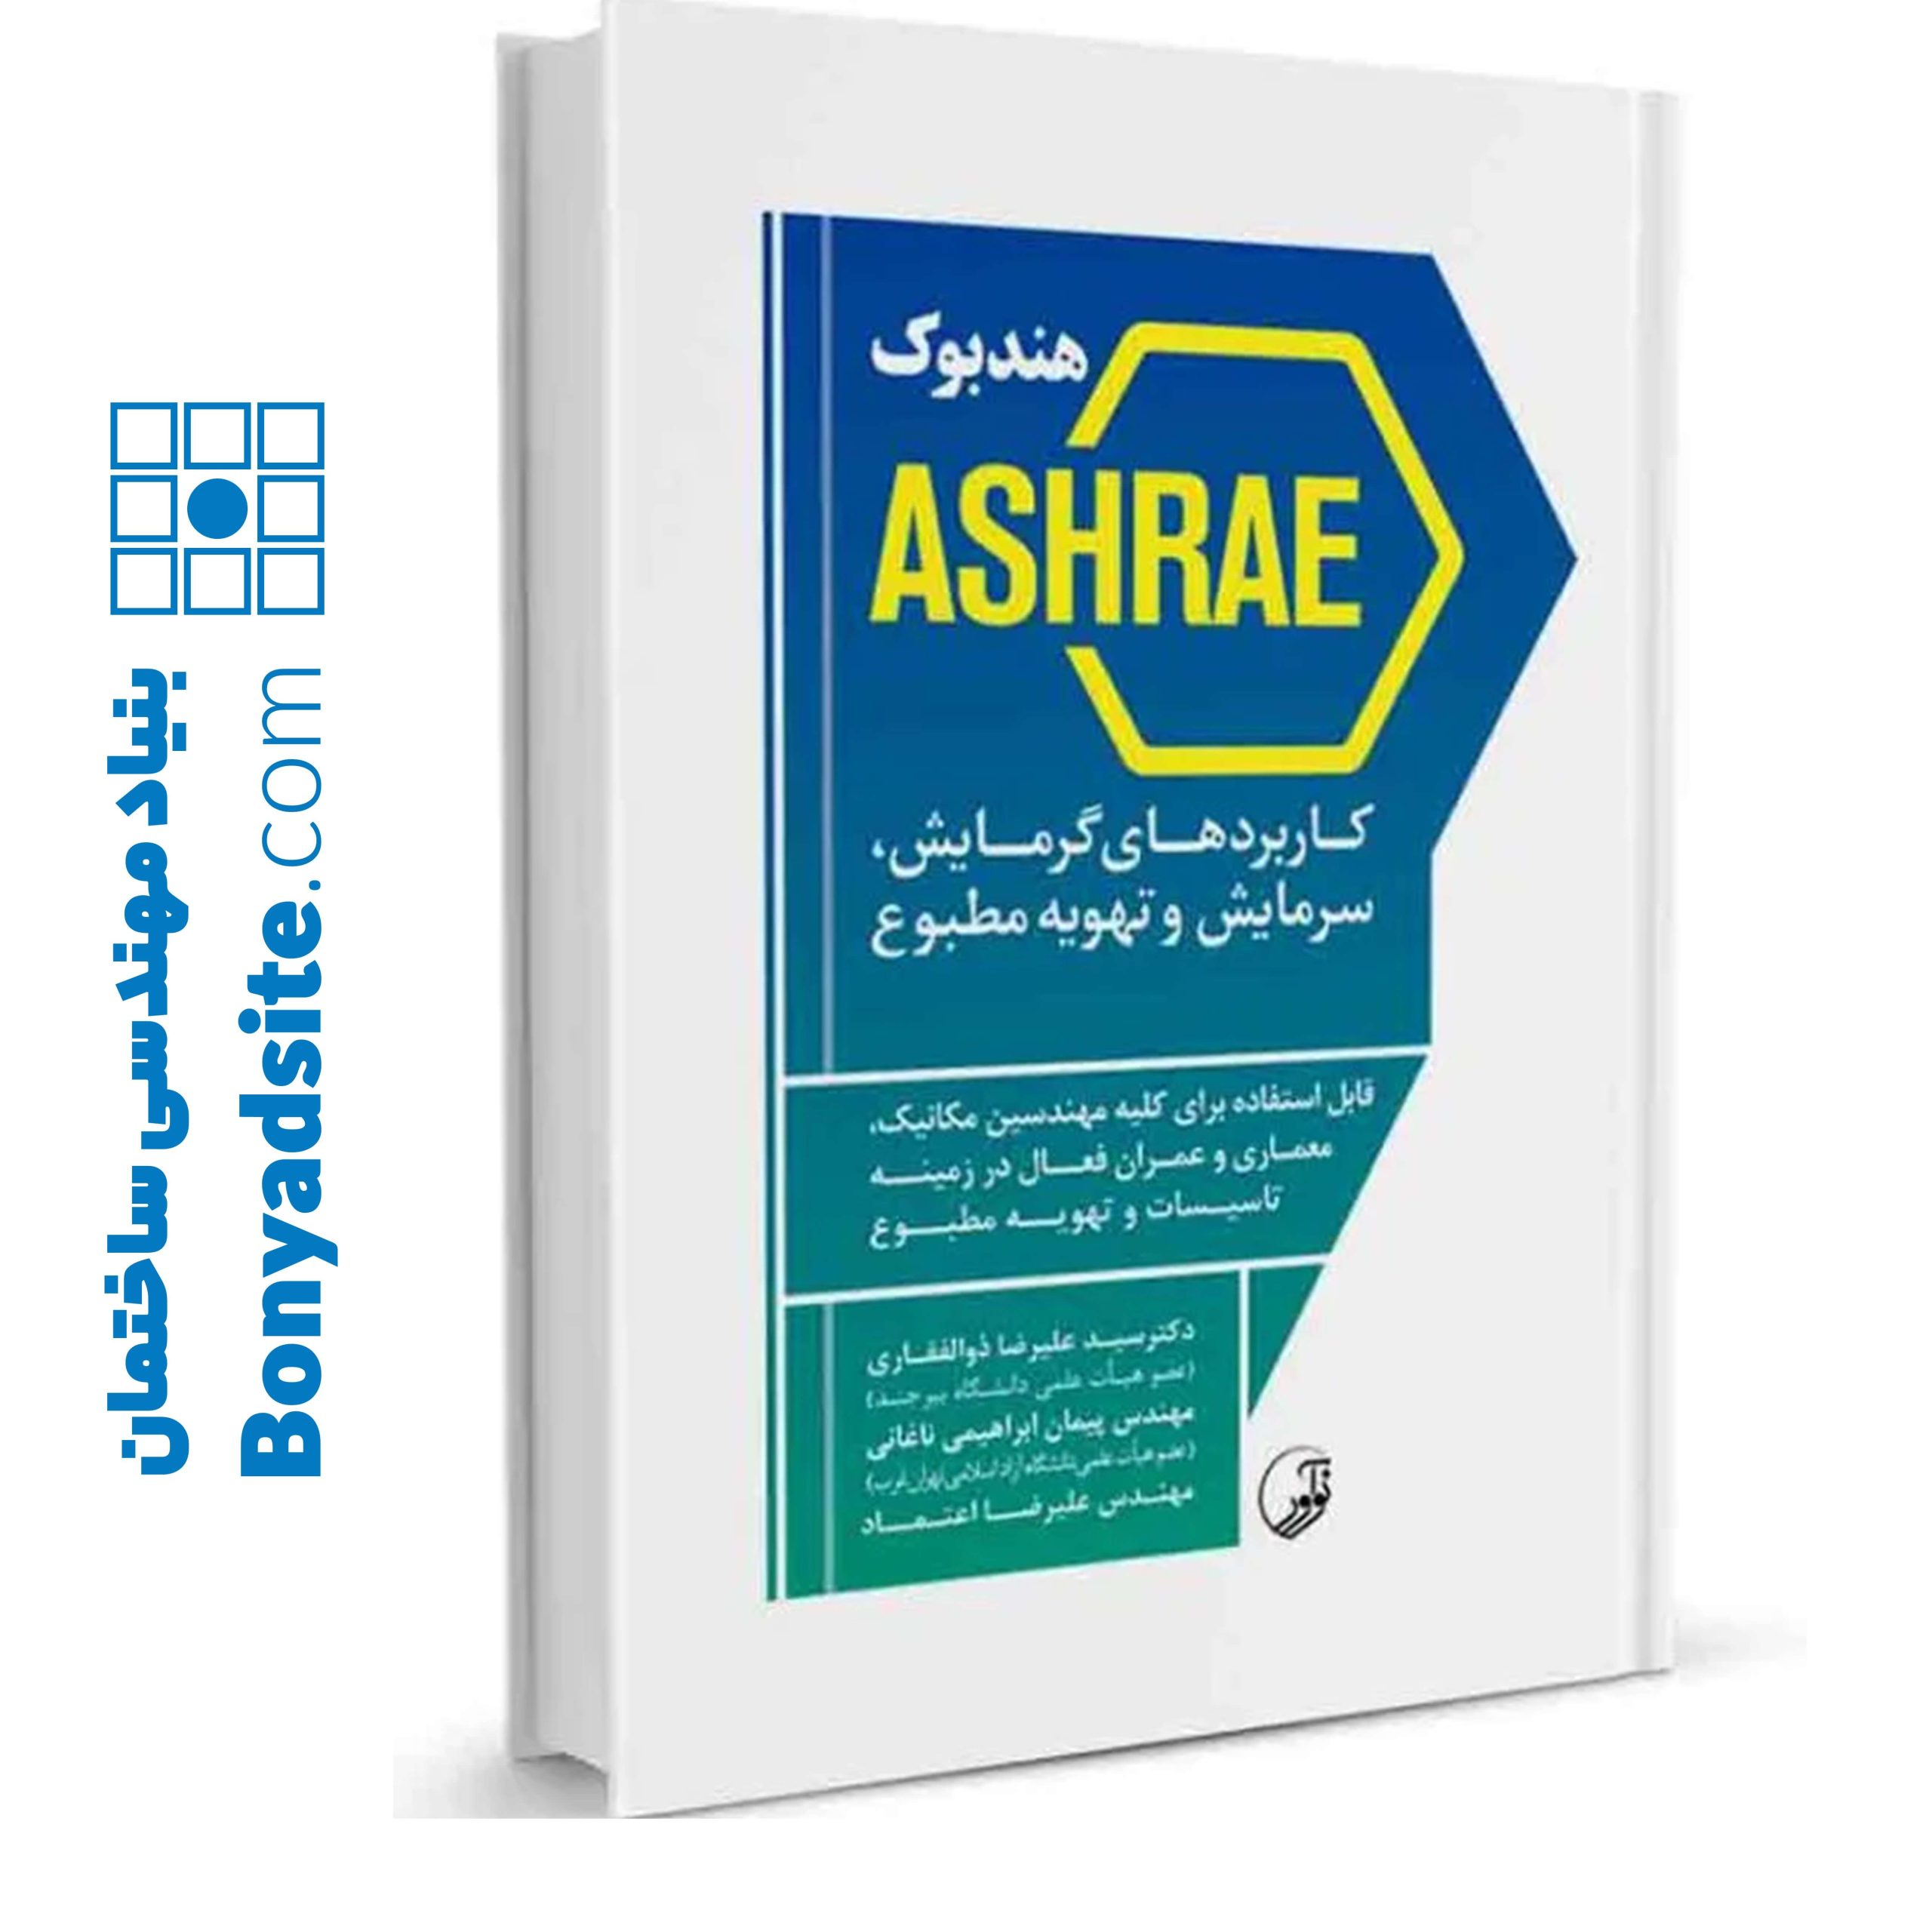 کتاب هندبوک ASHRAE کاربردهای گرمایش سرمایش و تهویه مطبوع